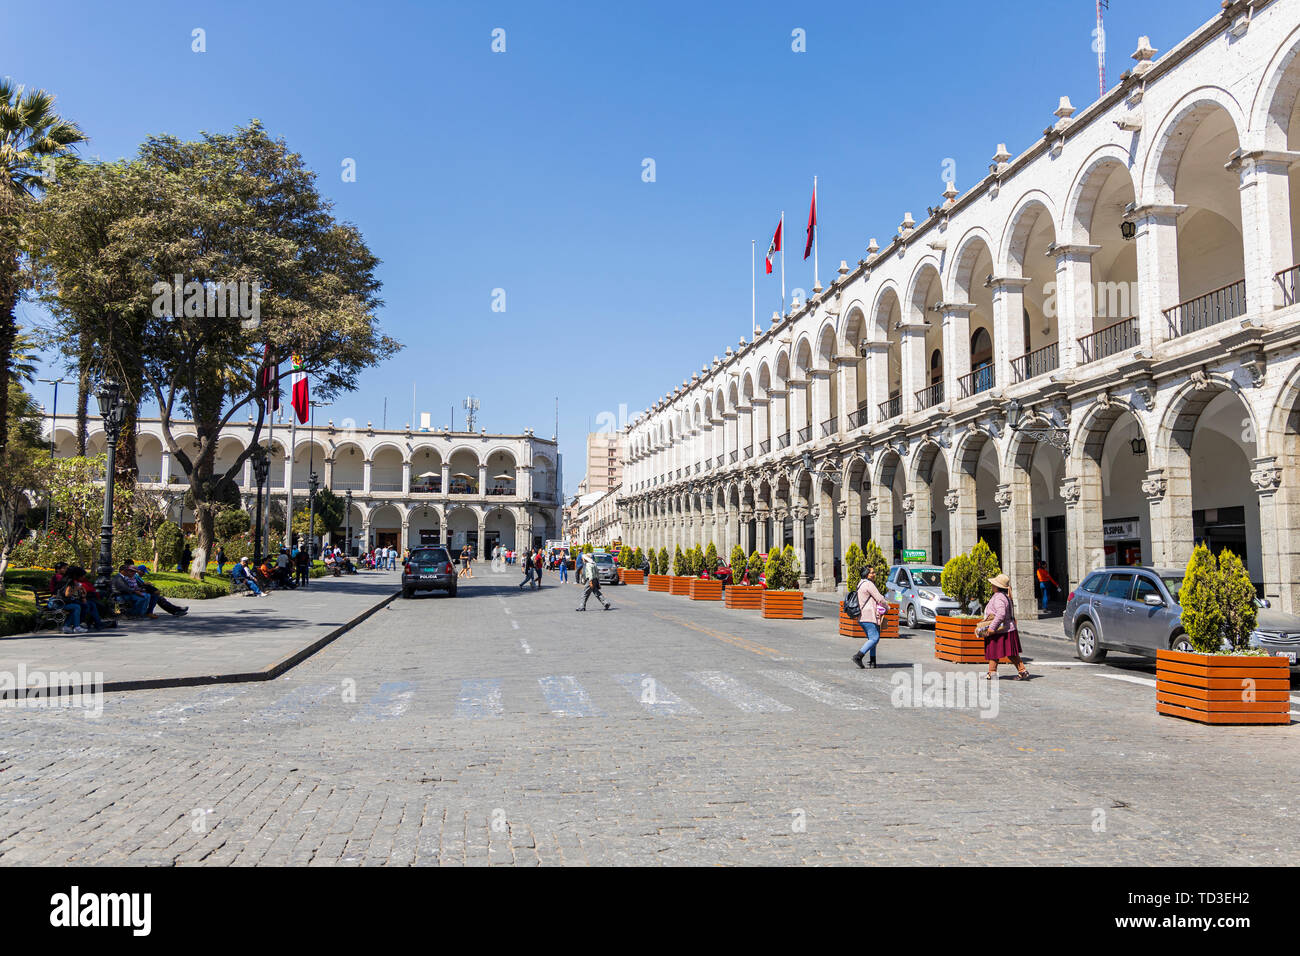 Colonial architecture in the Plaza de Armas, main square, Arequipa, Peru, South America Stock Photo